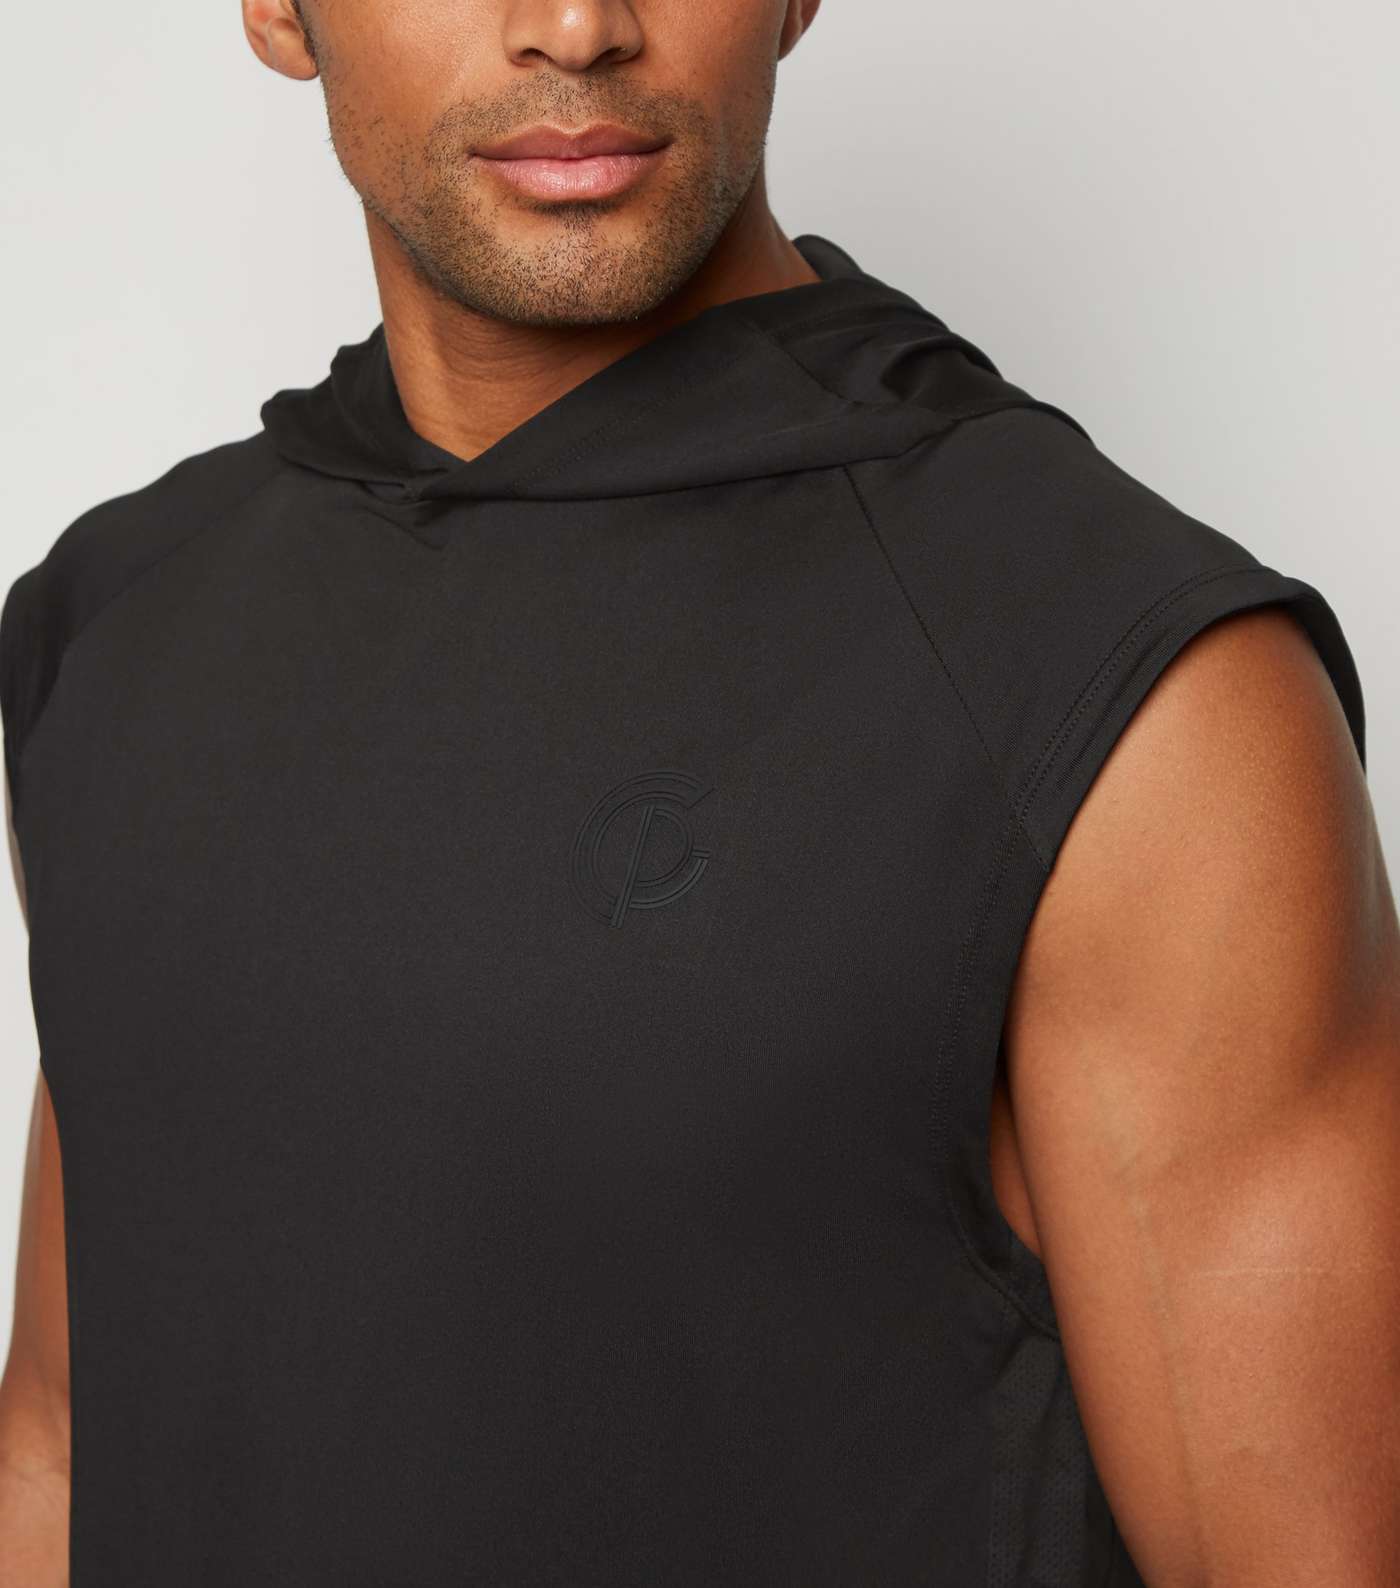 GymPro Black Mesh Panel Hooded Vest Image 5